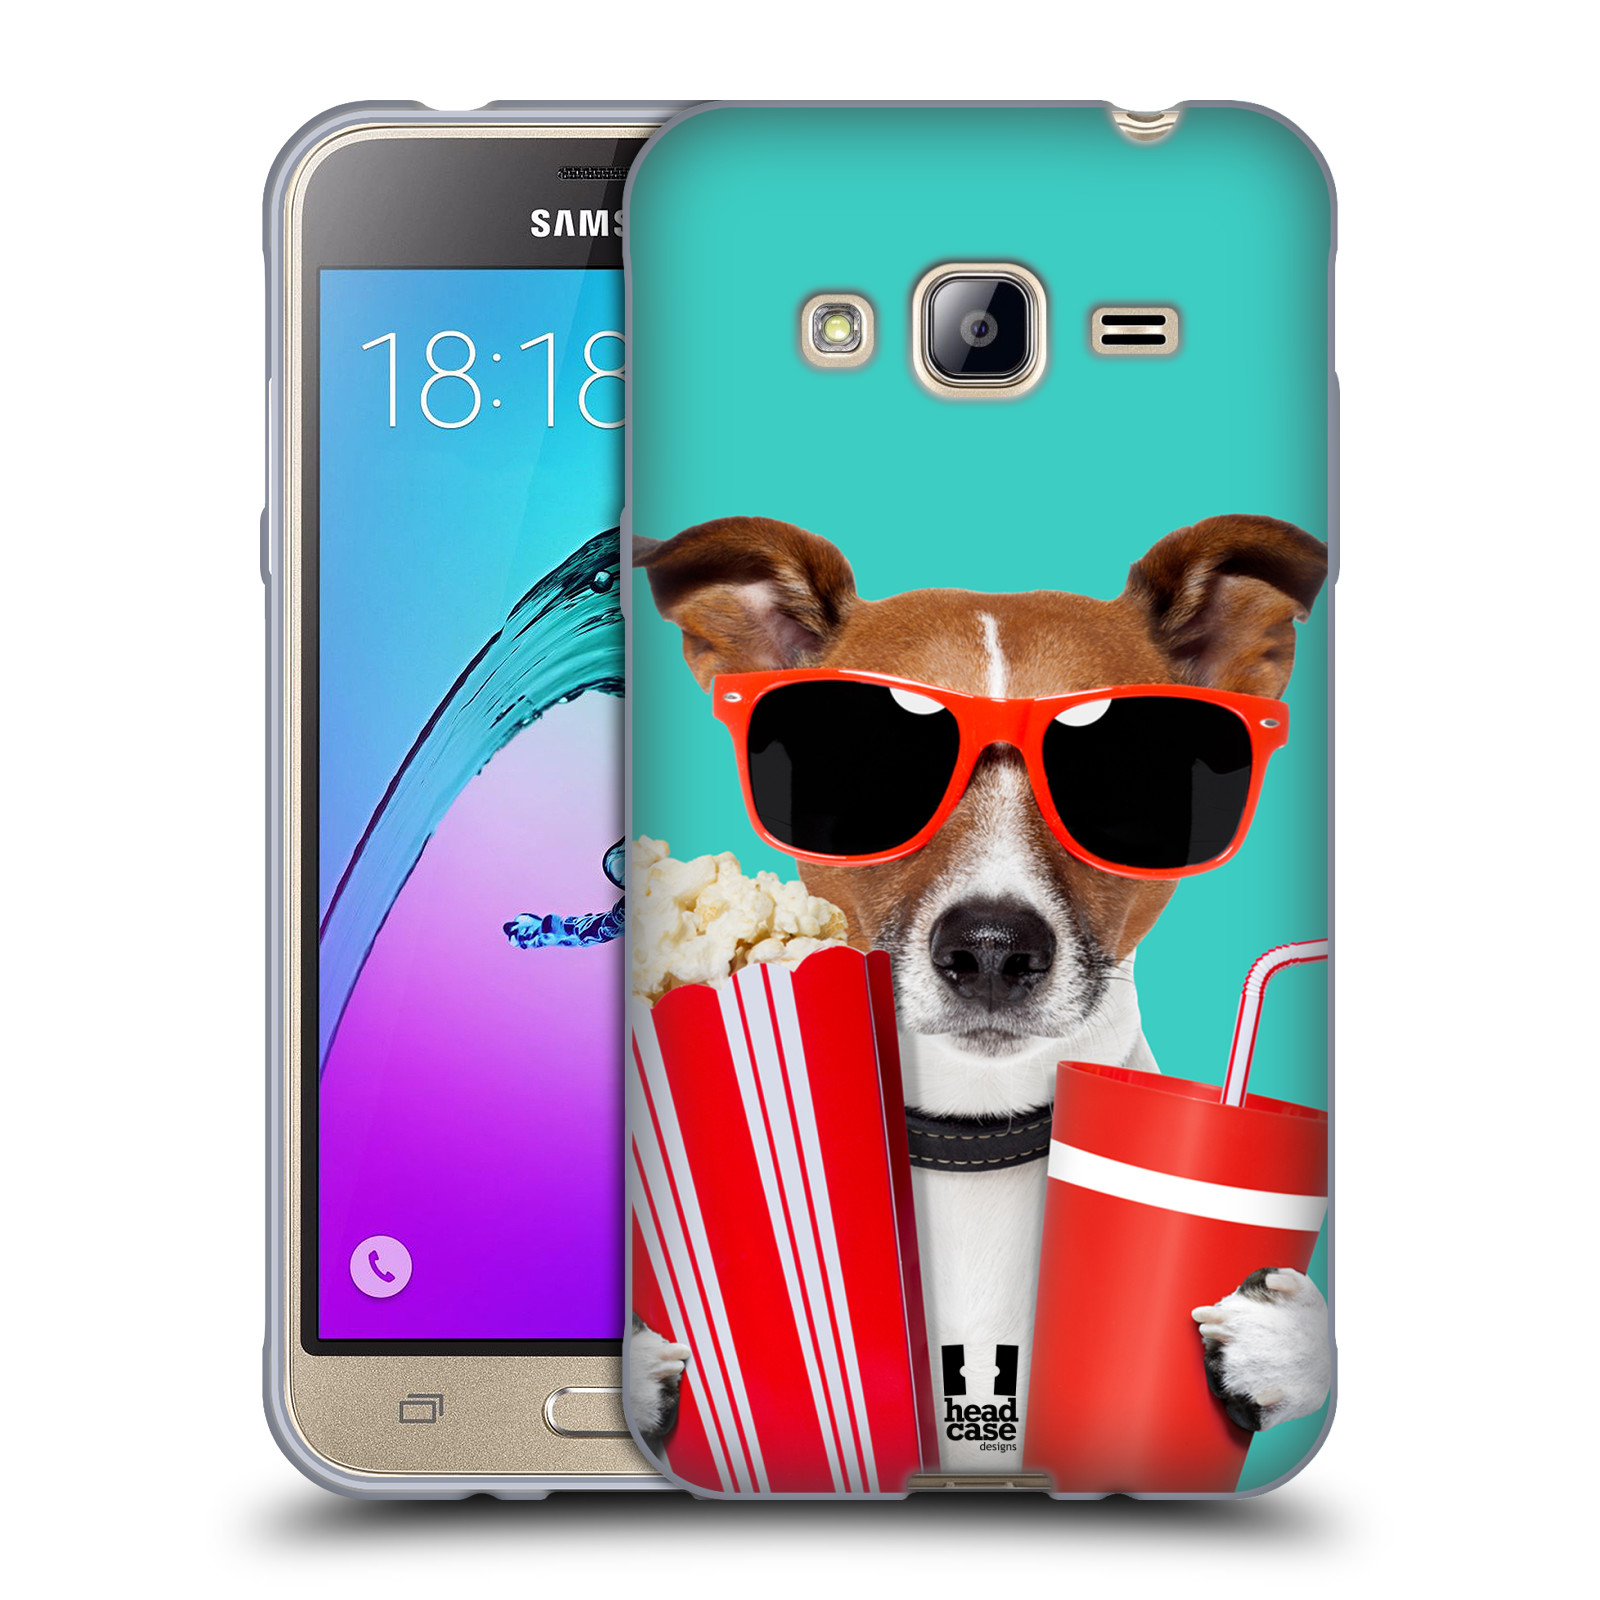 HEAD CASE silikonový obal na mobil Samsung Galaxy J3, J3 2016 vzor Legrační zvířátka pejsek v kině s popkornem